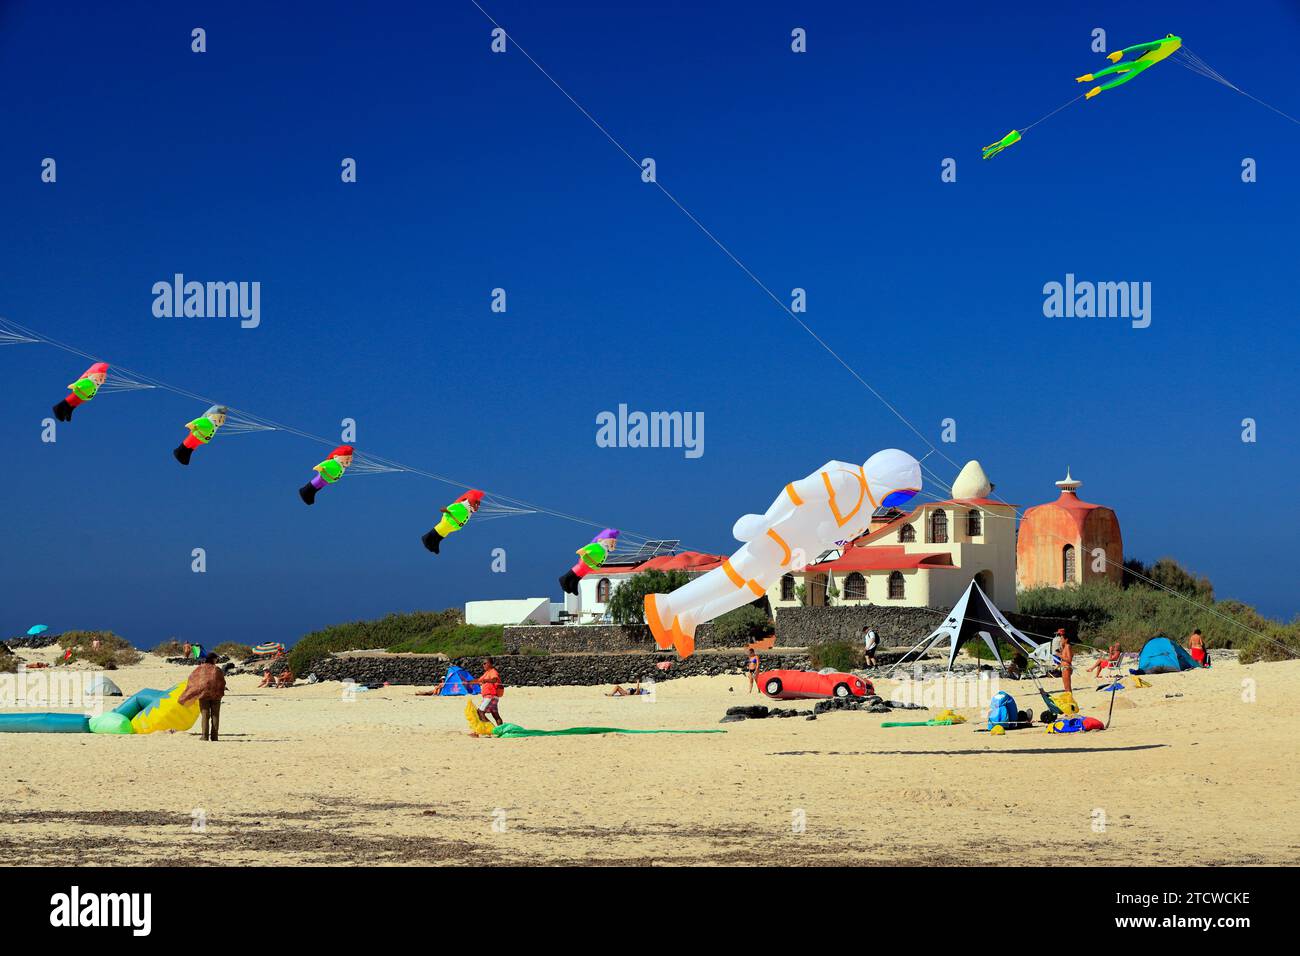 Kite flying, La Concha Beach, El Cotillo, Fuerteventura, Canary Islands, Spain. Stock Photo